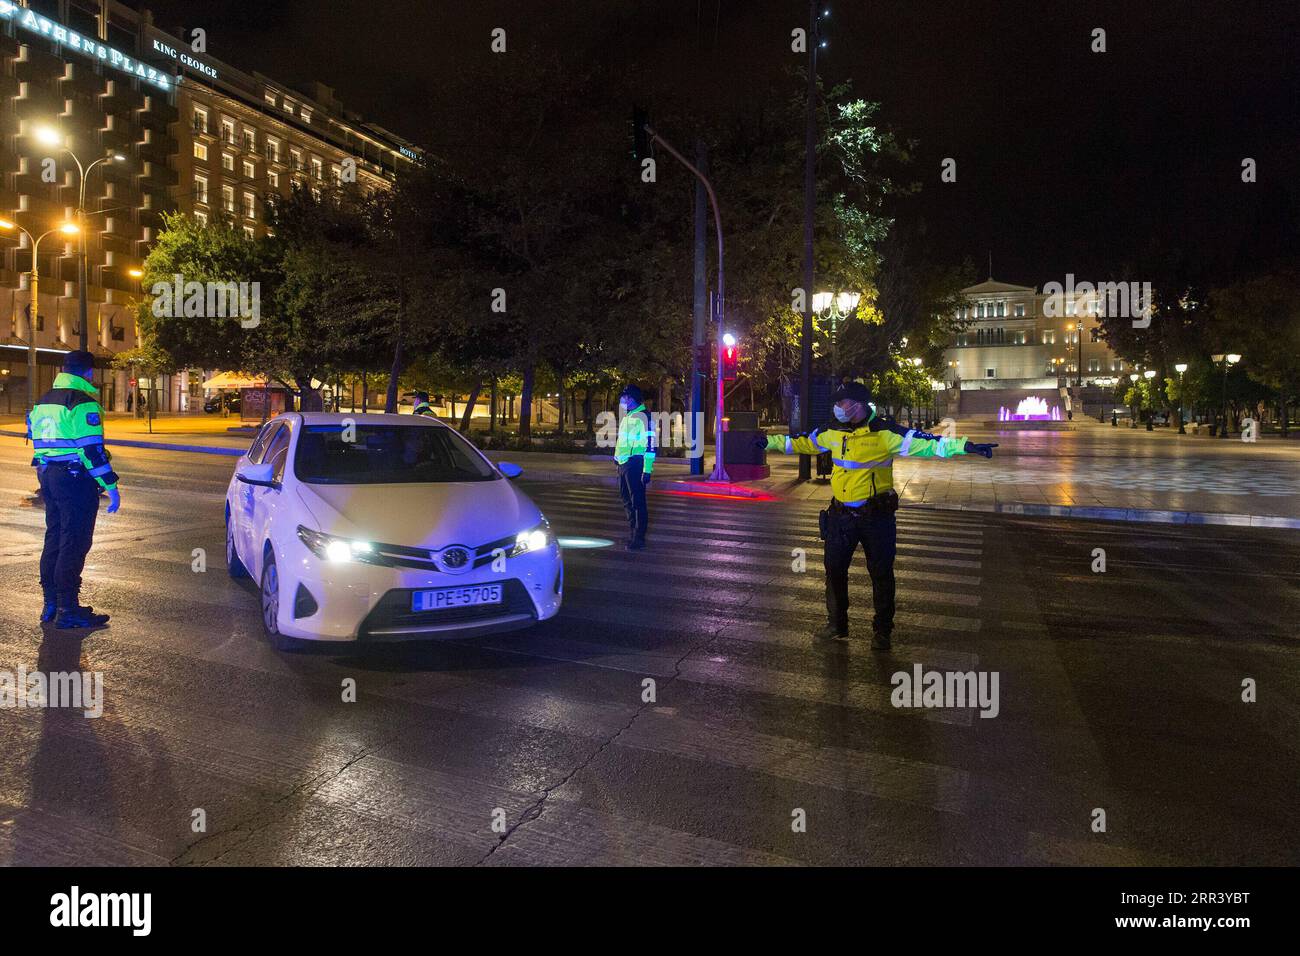 201114 -- ATHEN, 14. November 2020 -- Polizisten werden während der Ausgangssperre am Syntagma-Platz in Athen, Griechenland, am 13. November 2020 im Dienst gesehen. Eine landesweite Ausgangssperre für die Nacht wurde ab 13. November von 21.00 Uhr bis 5.00 Uhr verhängt. Griechenland trat am 7. November in seine zweite vollständige COVID-19-Sperrung ein. GRIECHENLAND-ATHEN-COVID-19-AUSGANGSSPERRE MariosxLolos PUBLICATIONxNOTxINxCHN Stockfoto